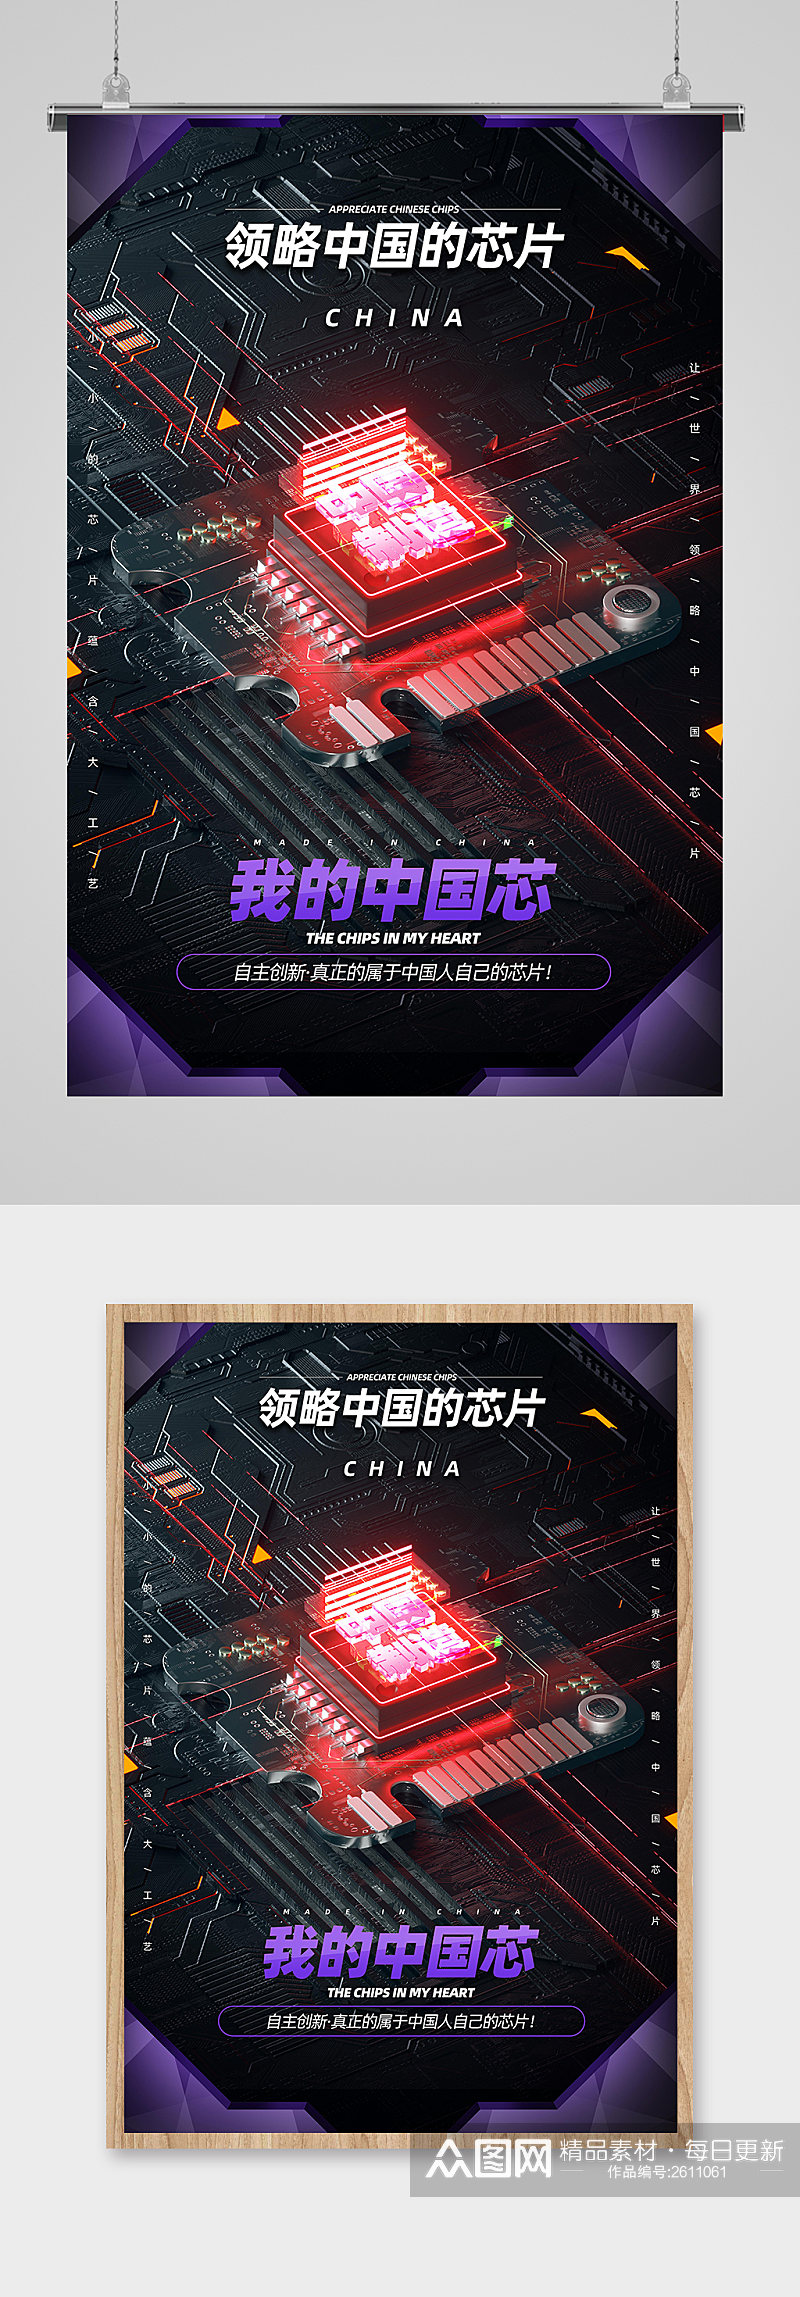 炫酷简约中国芯片宣传海报素材